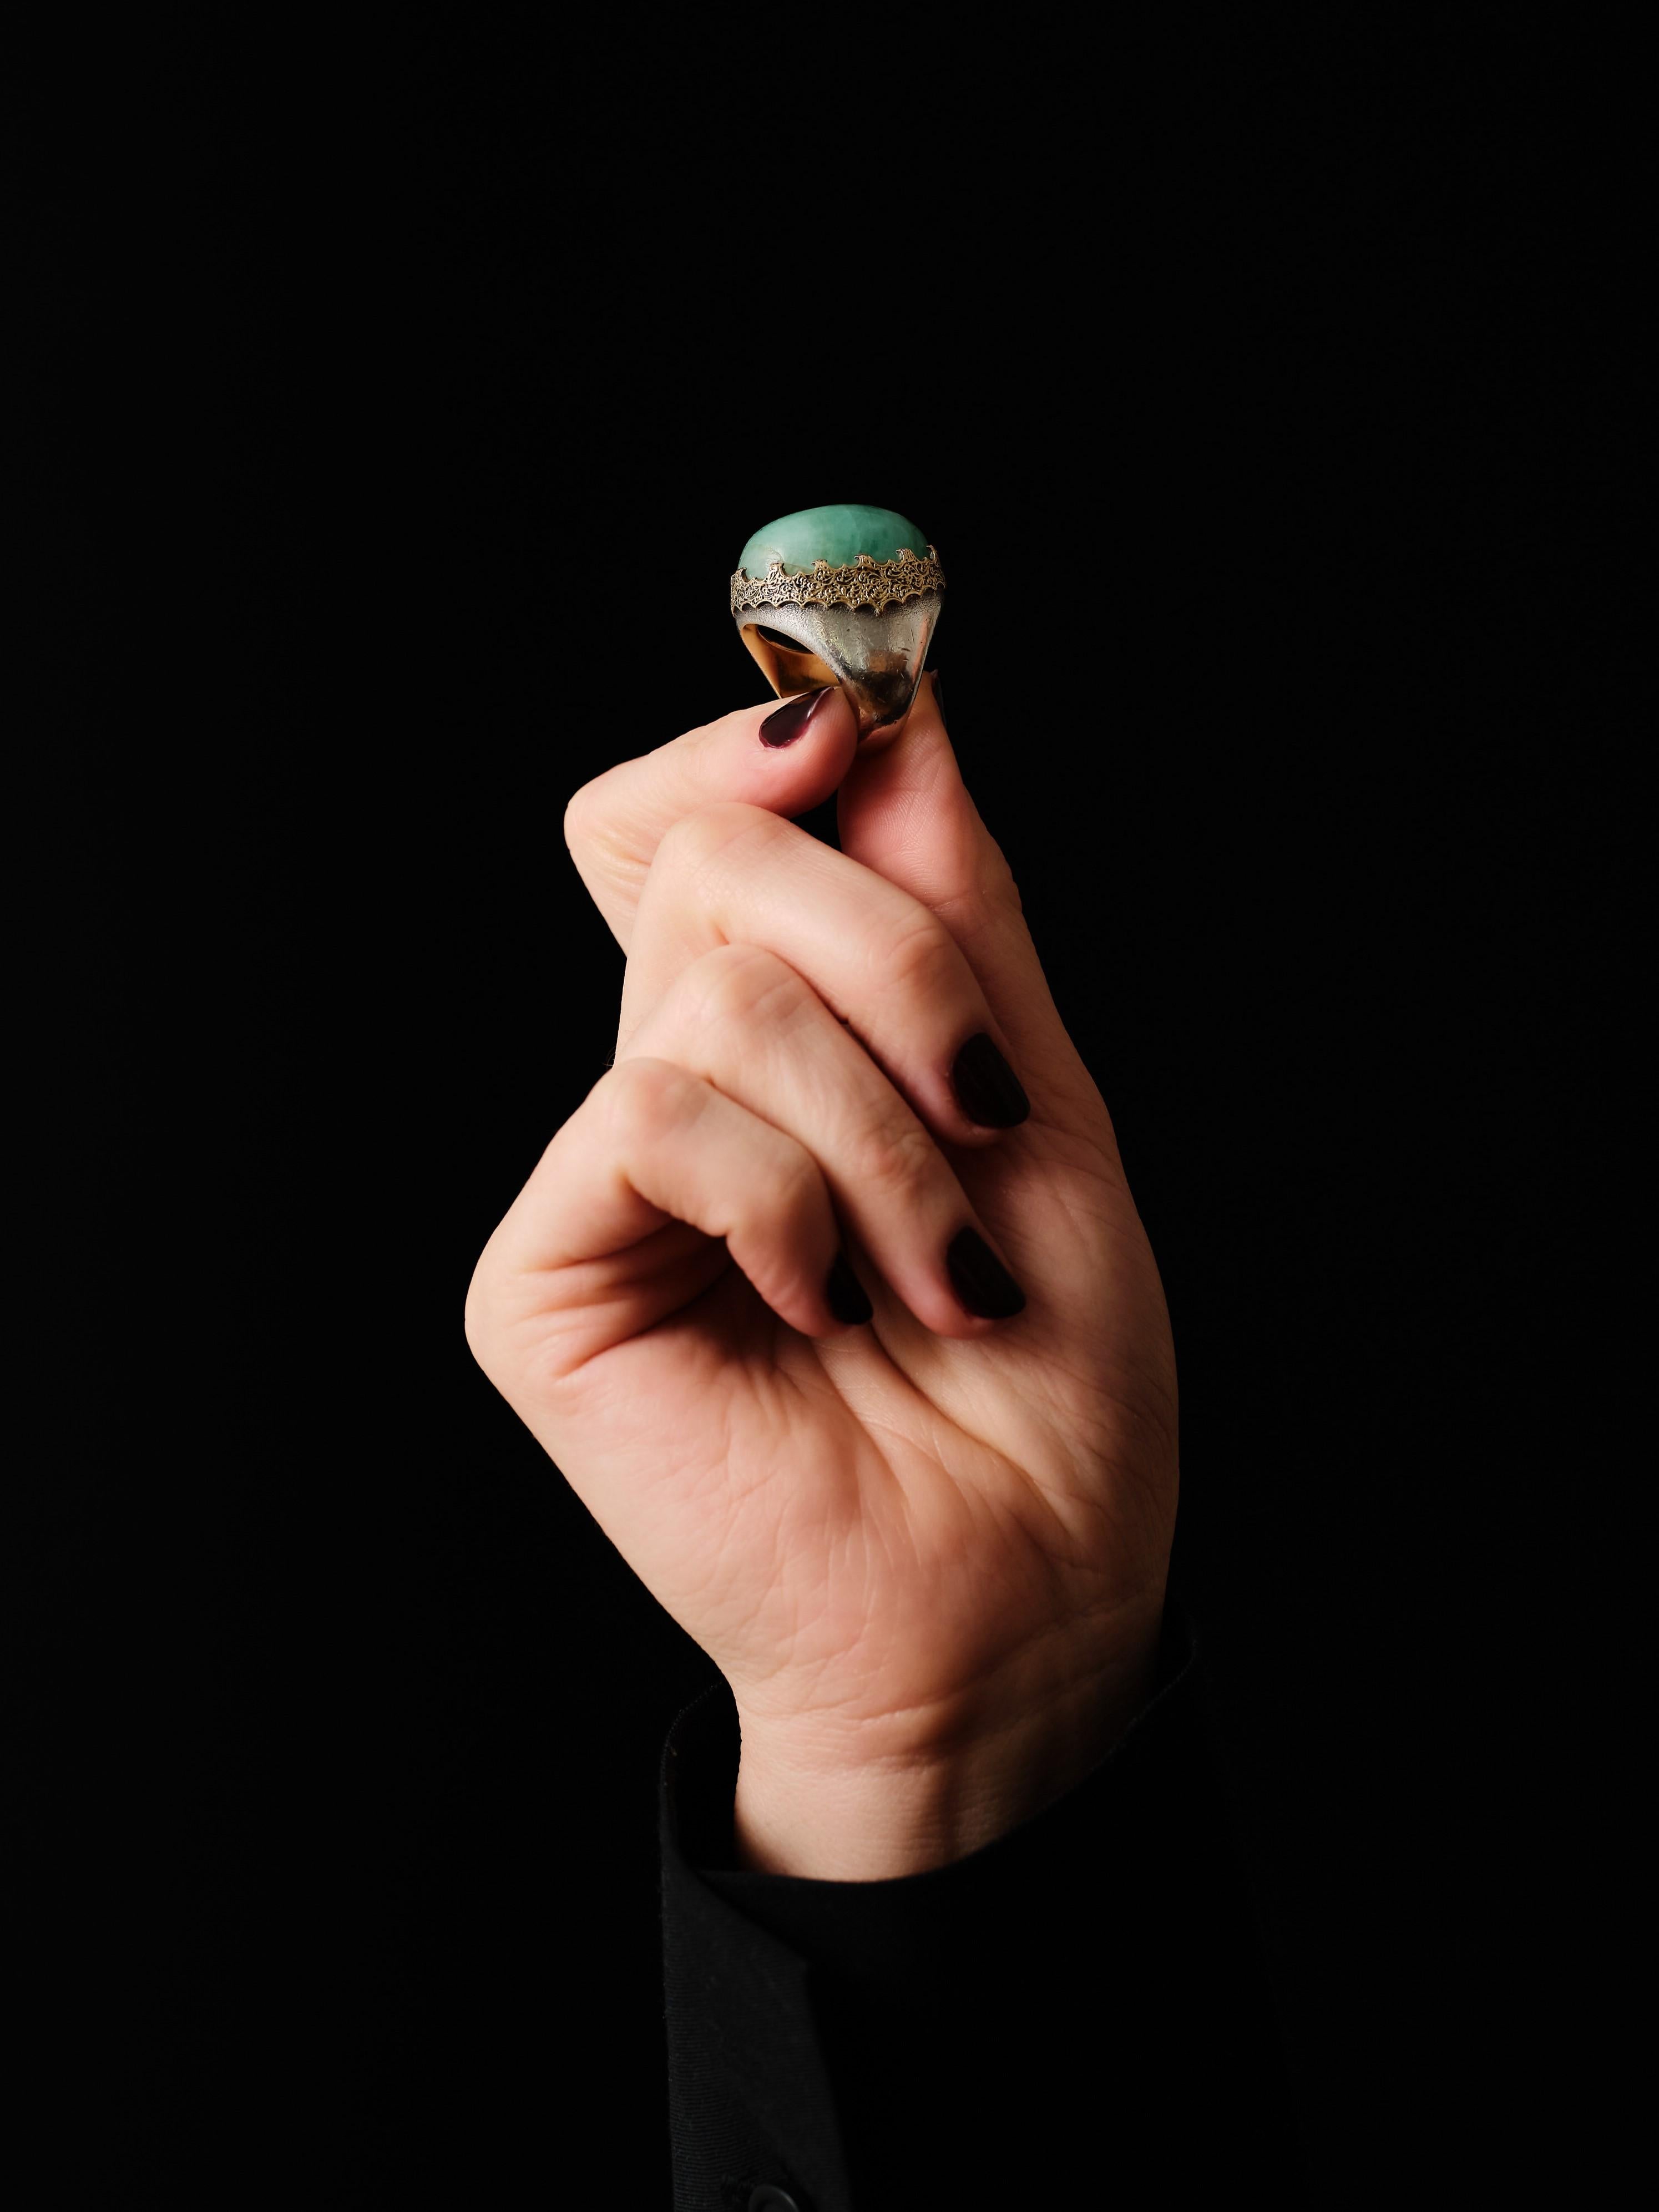 Vintage By Mario Buccellati Ring aus den 1960er Jahren, mit vergoldetem Silberschaft und durchbrochenem Goldrand, der einen Nephrit aus Jade von 39 Karat hält. 

Unterzeichnet: M.Buccellati

Ringgröße: US 4.255, 15.75mm, I
Bruttogewicht: 25,9